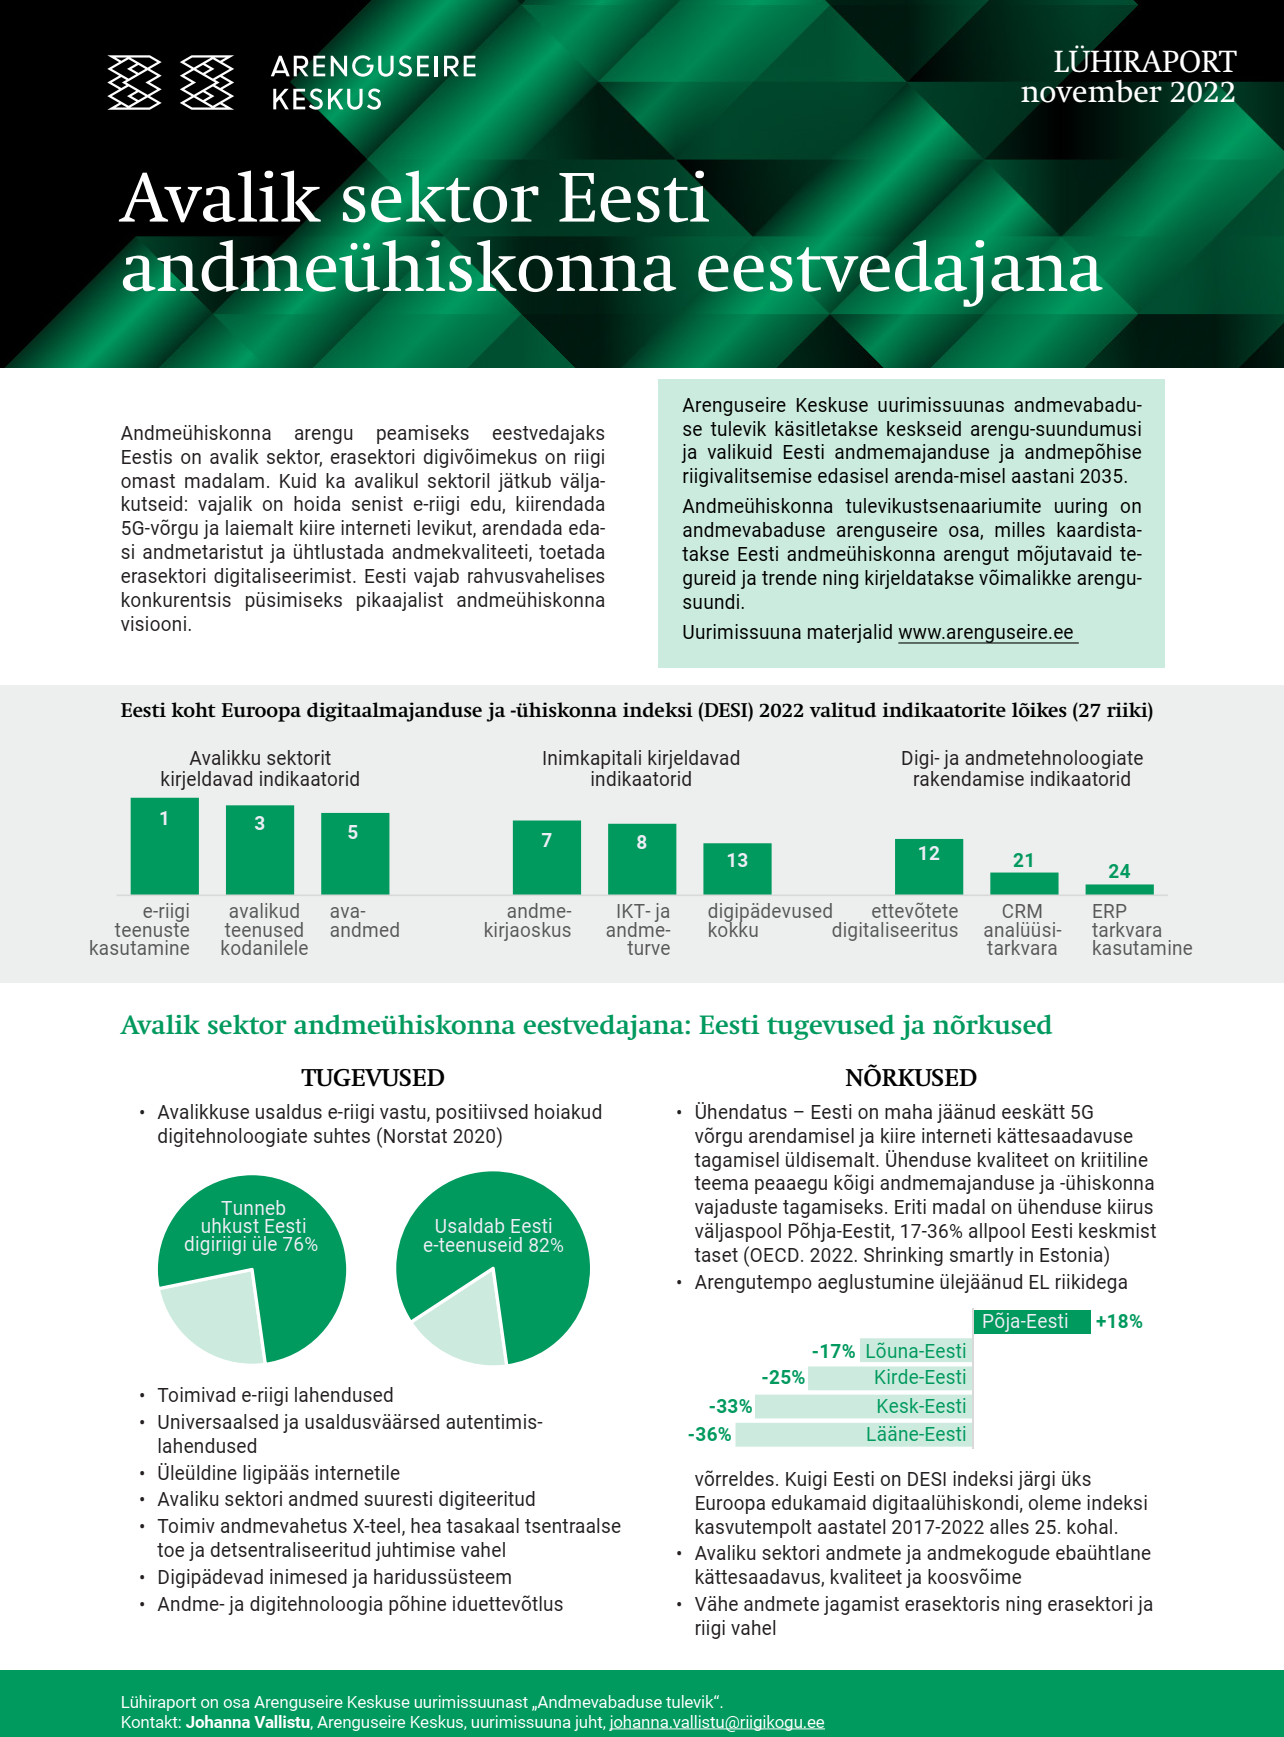 Lühiraport: Avalik sektor Eesti andmeühiskonna eestvedajana (kaas)